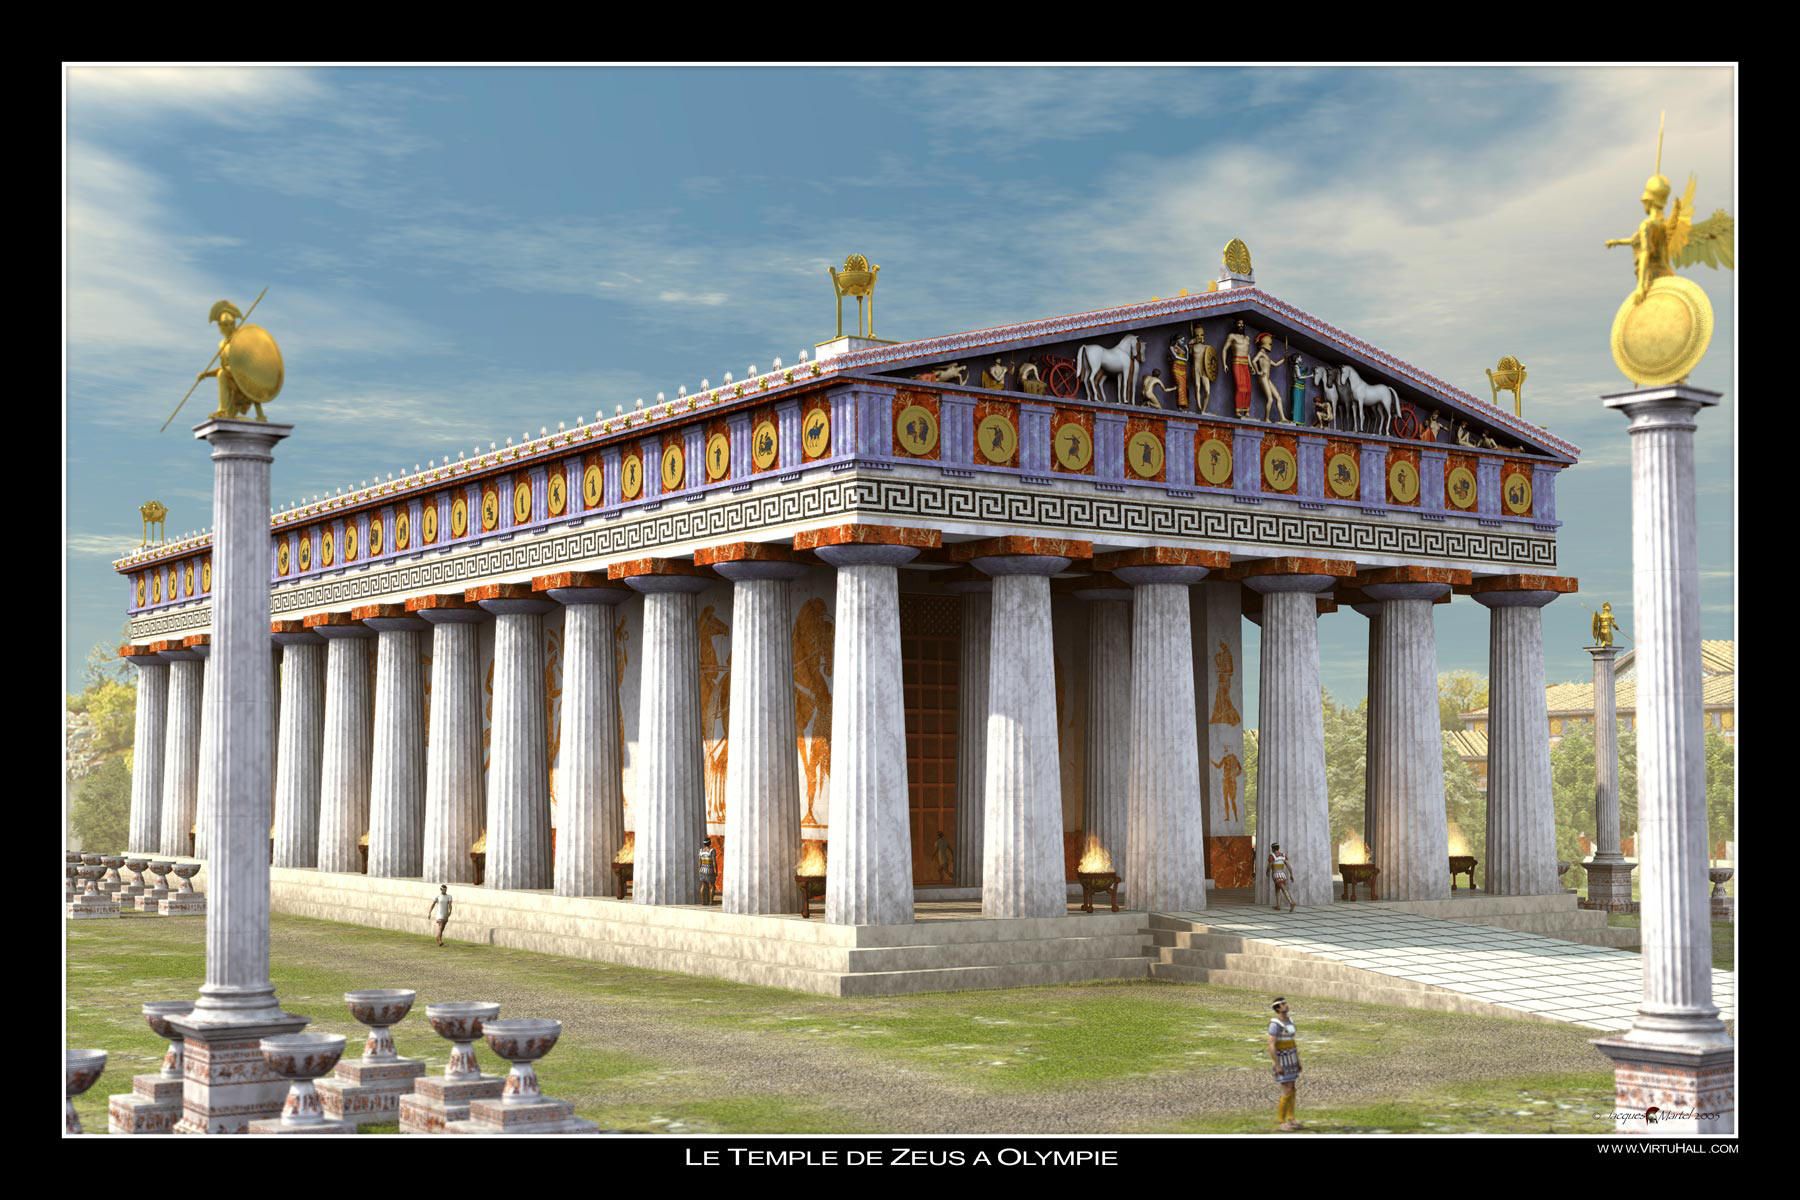 Парфенон – храм афинского акрополя с богатой многовековой историей